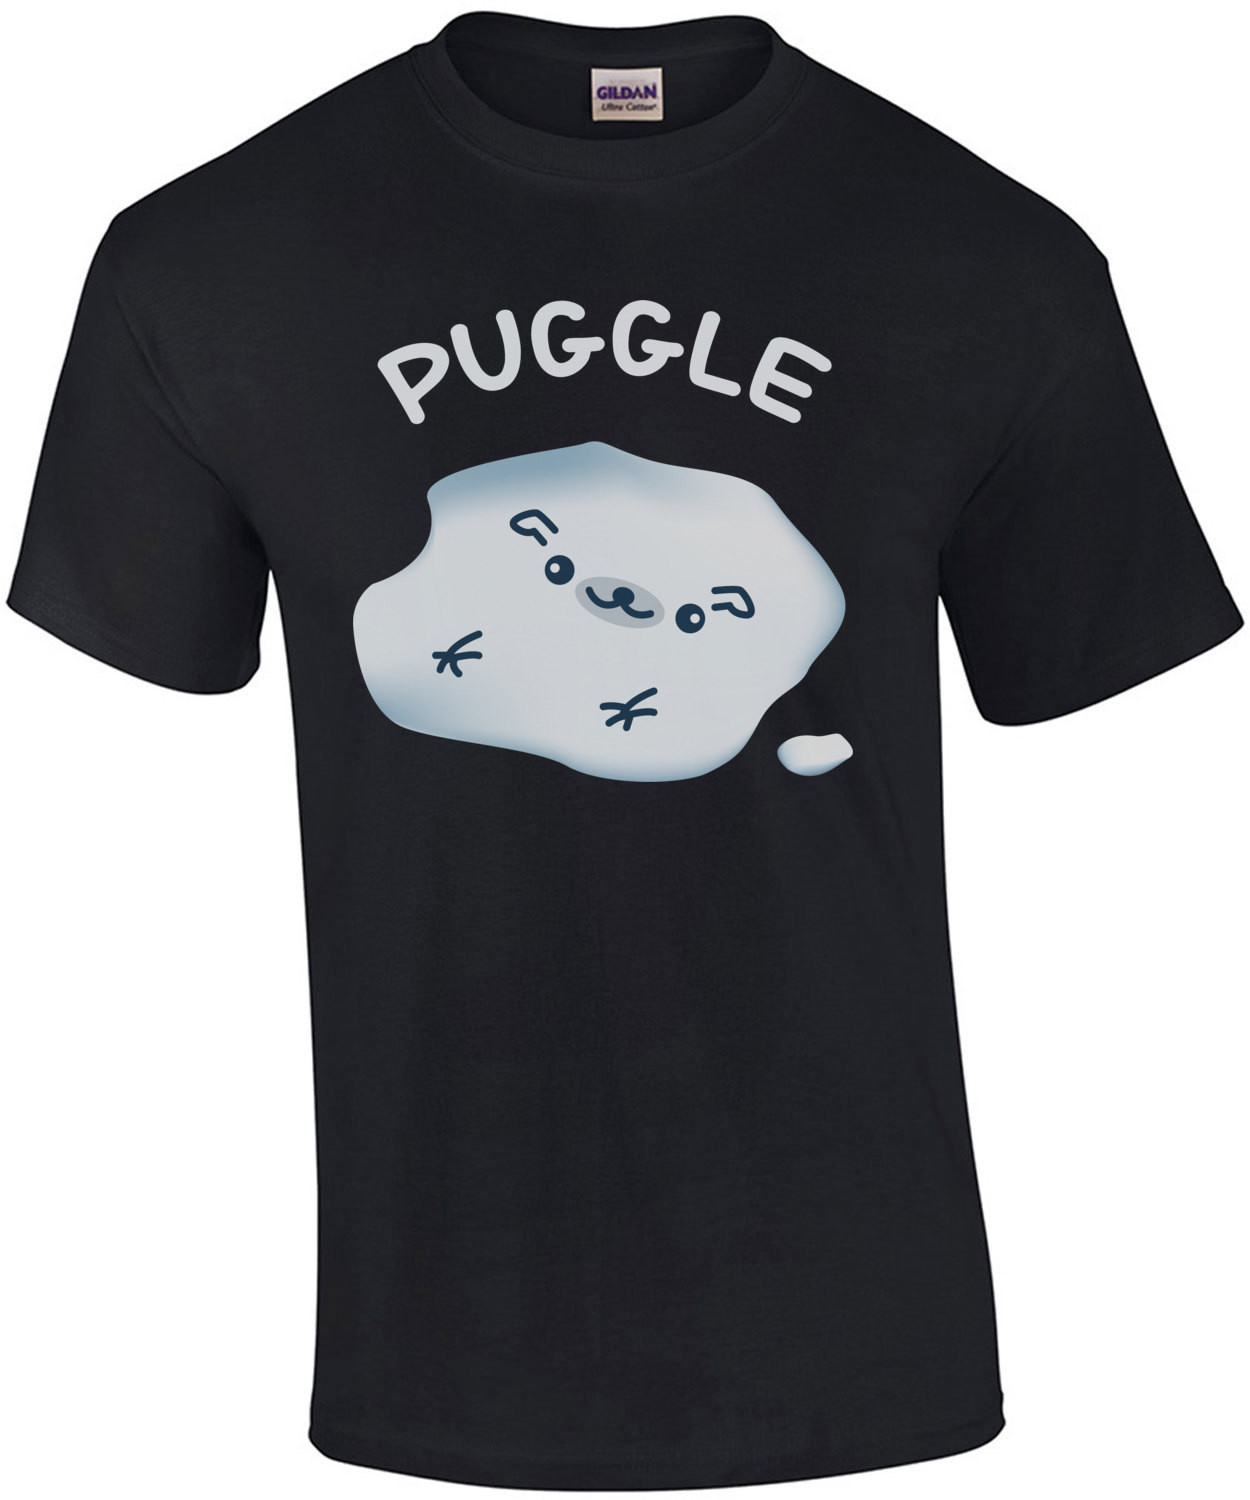 Puggle T-Shirt